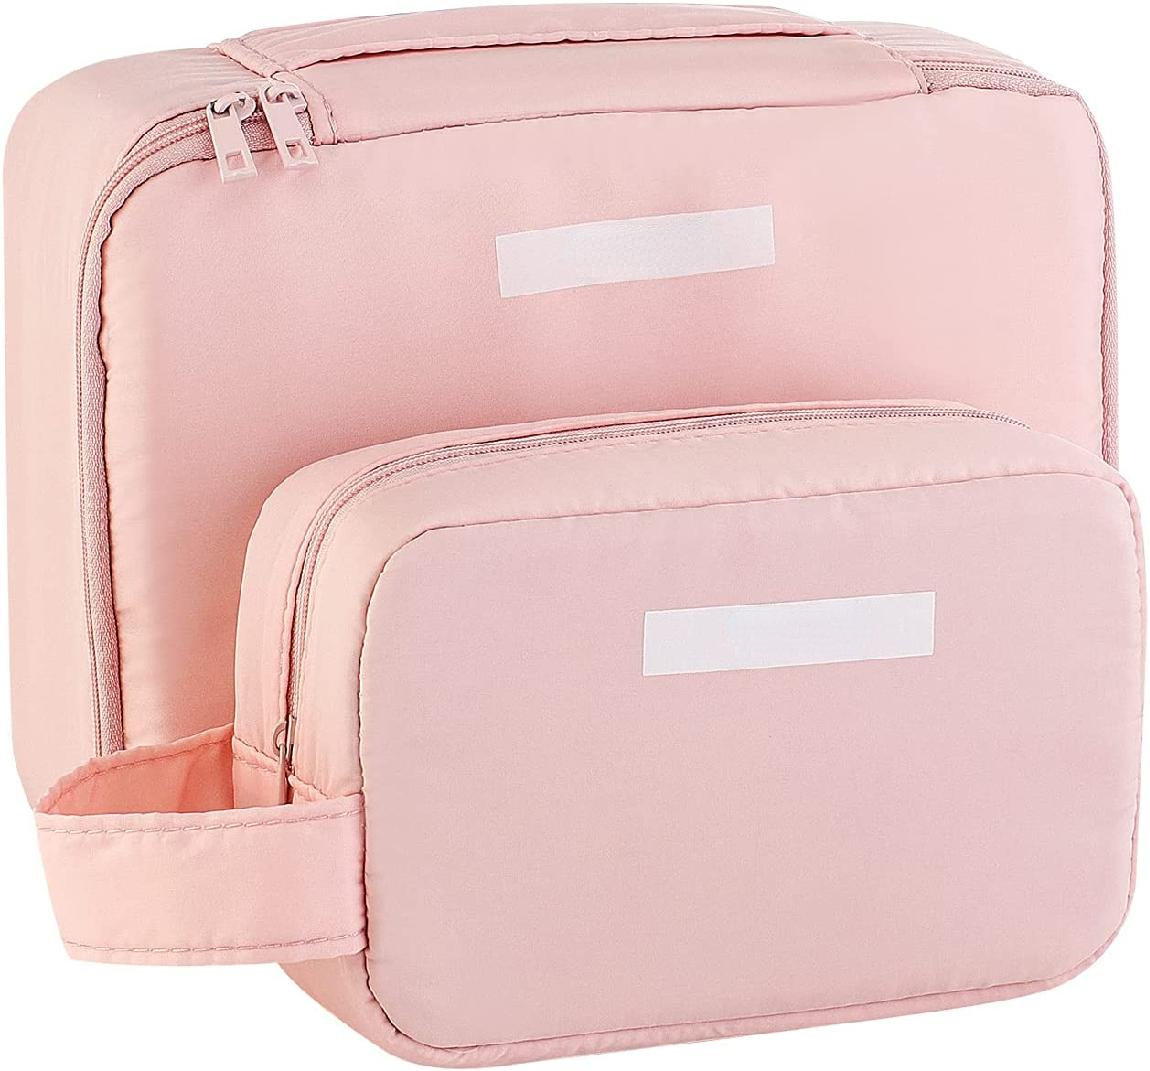 Latitude Run® Makeup Bag Cosmetic Bag Travel Toiletry Bag For